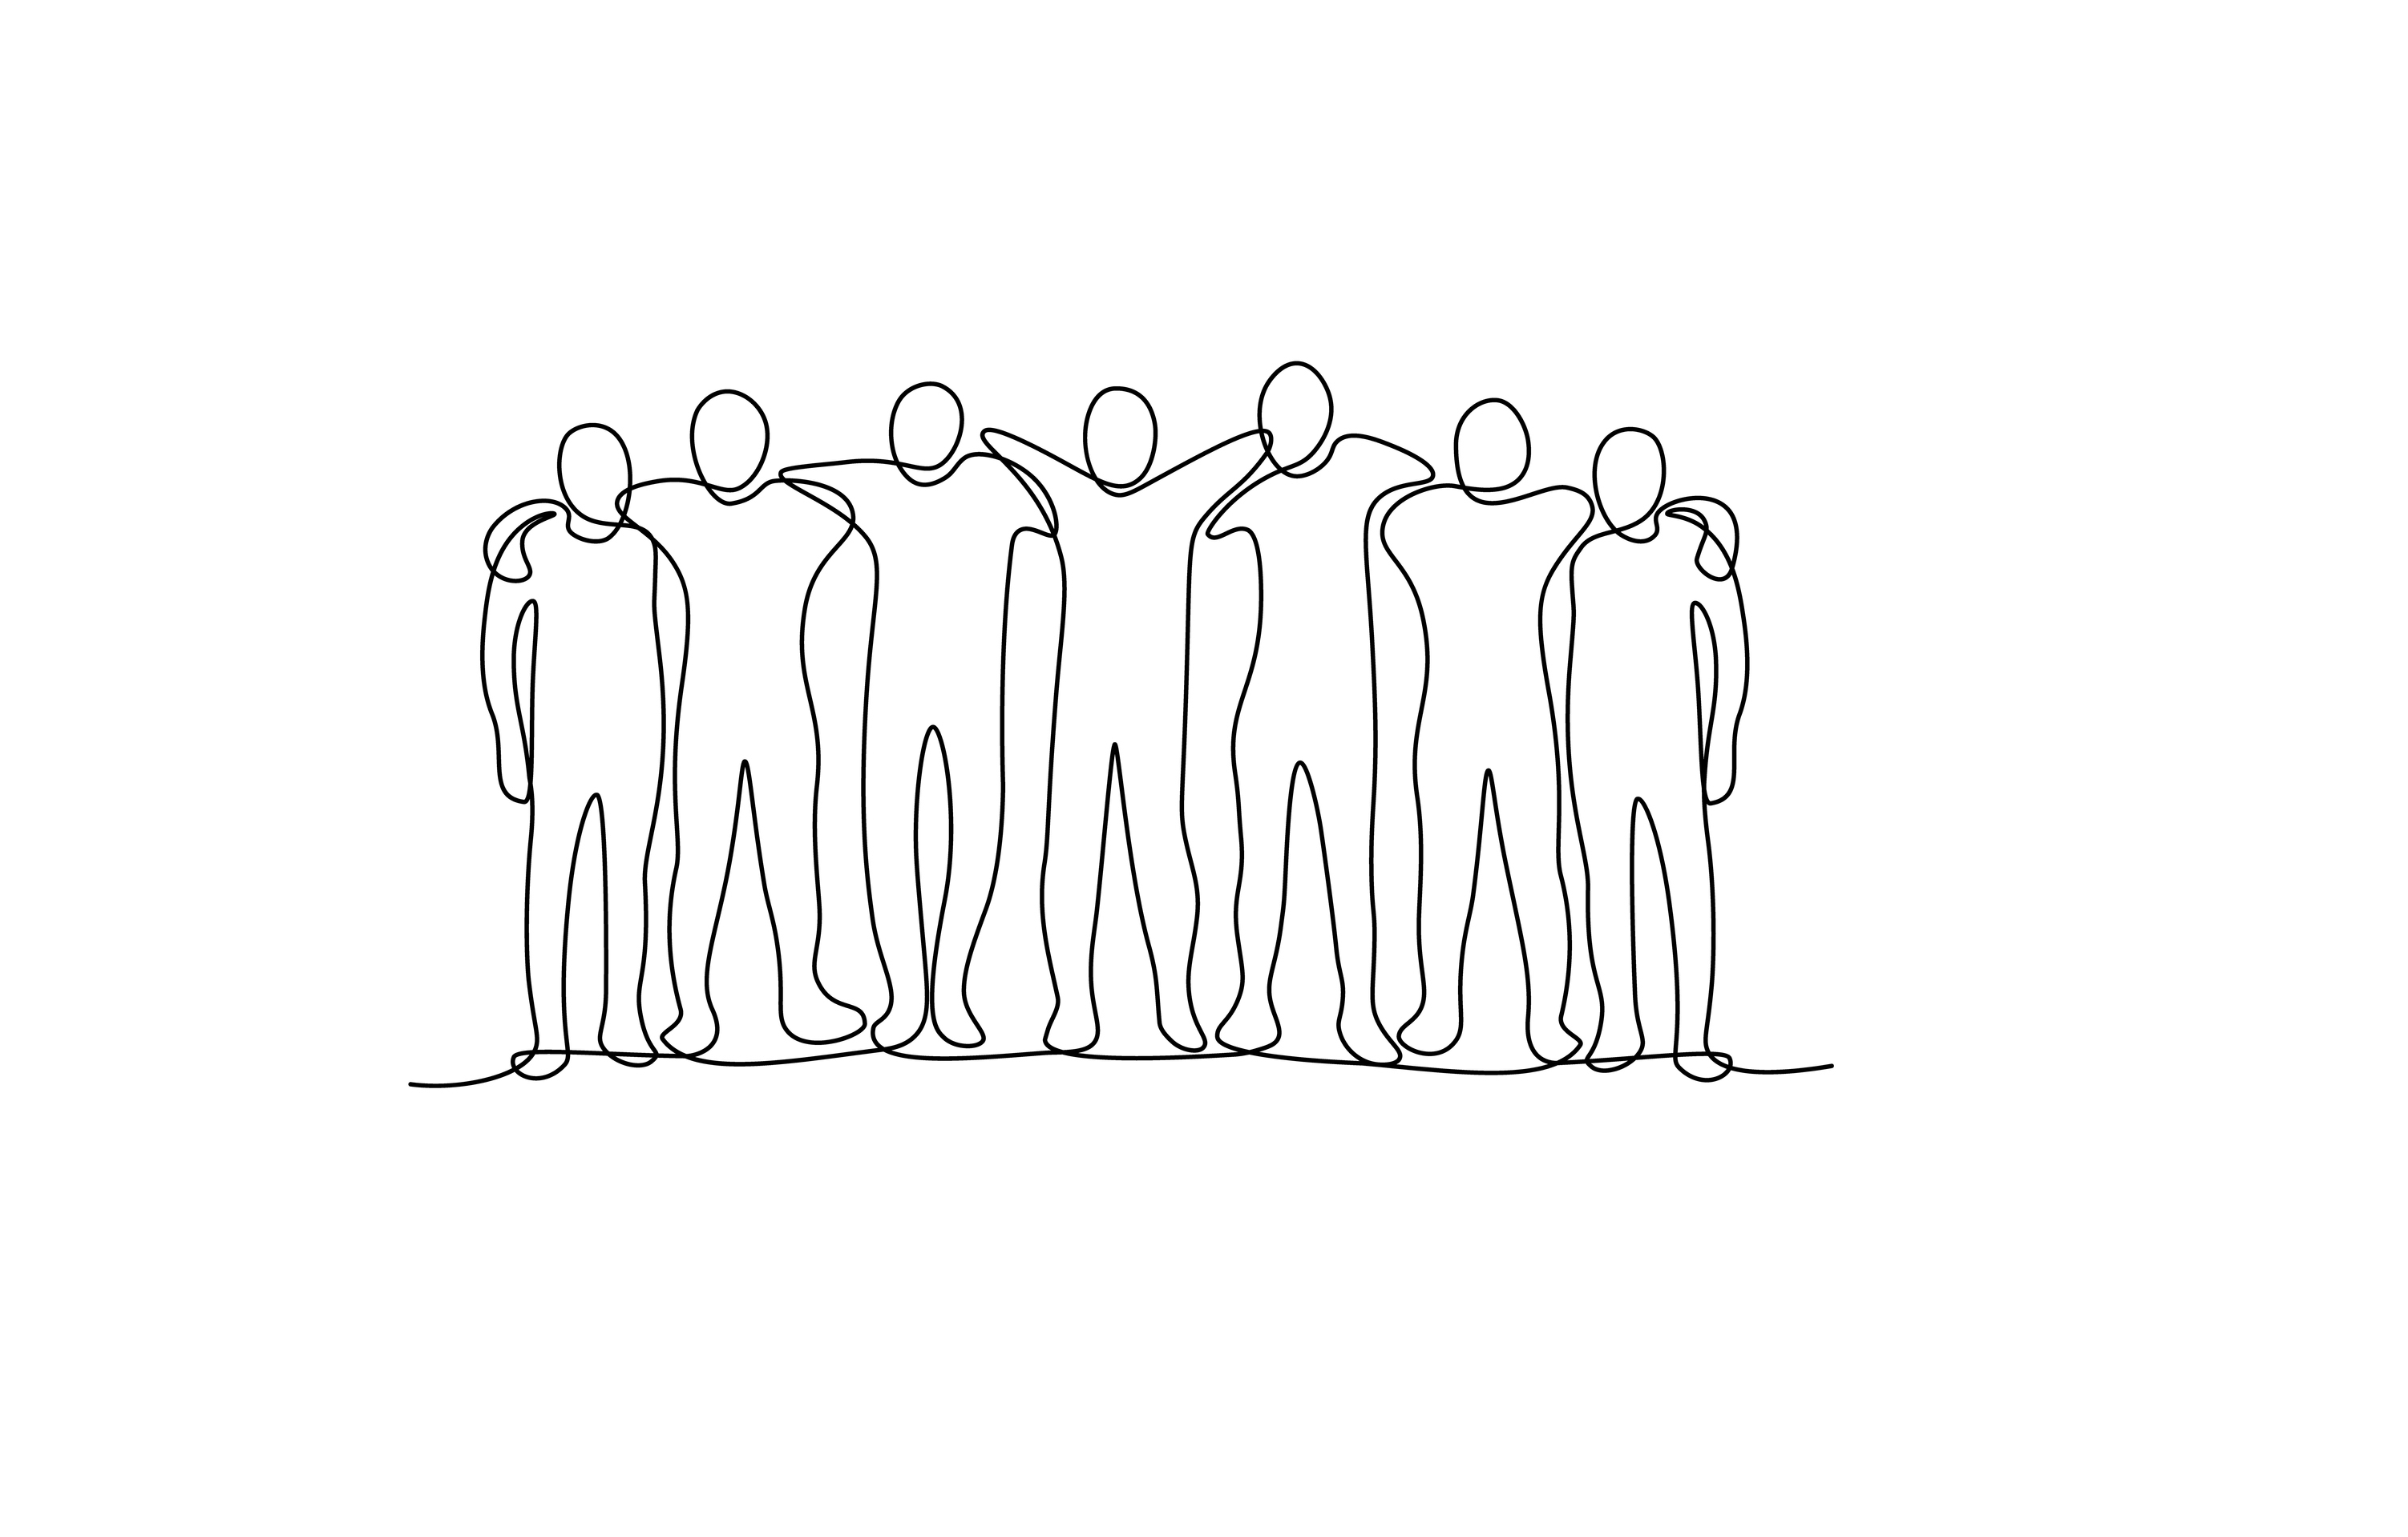 Bilden visar en tecknad grupp med människor som håller om varandra vänskapligt och förmedlar en lagkänsla. Bilden symboliserar Länsgårdens arbete med Social hållbarhet